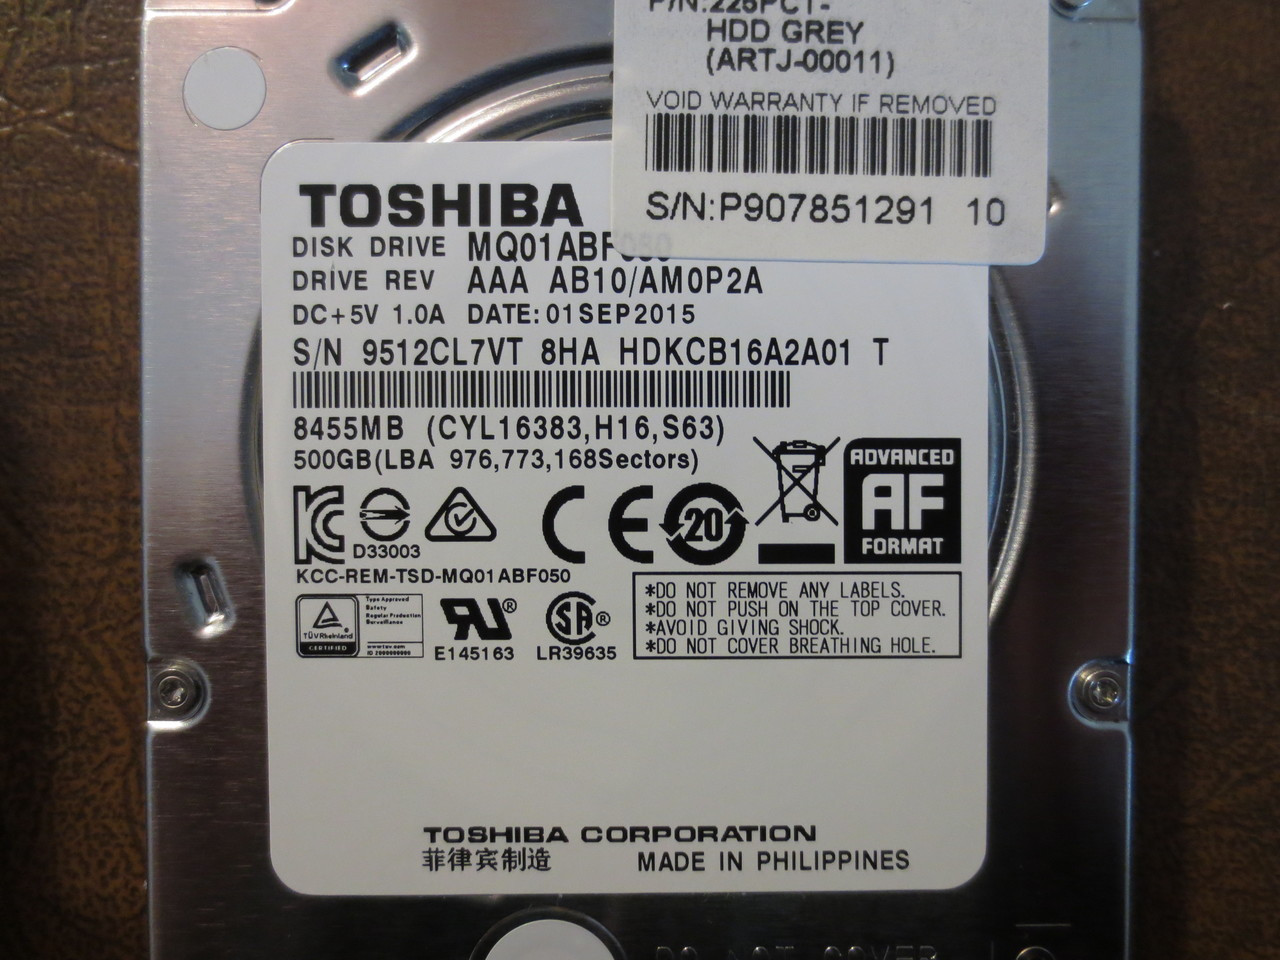 Toshiba MQ01ABF050 HDKCB16A2A01 T AAA AB10/AM0P2A 500gb 2.5" Sata -  Effective Electronics